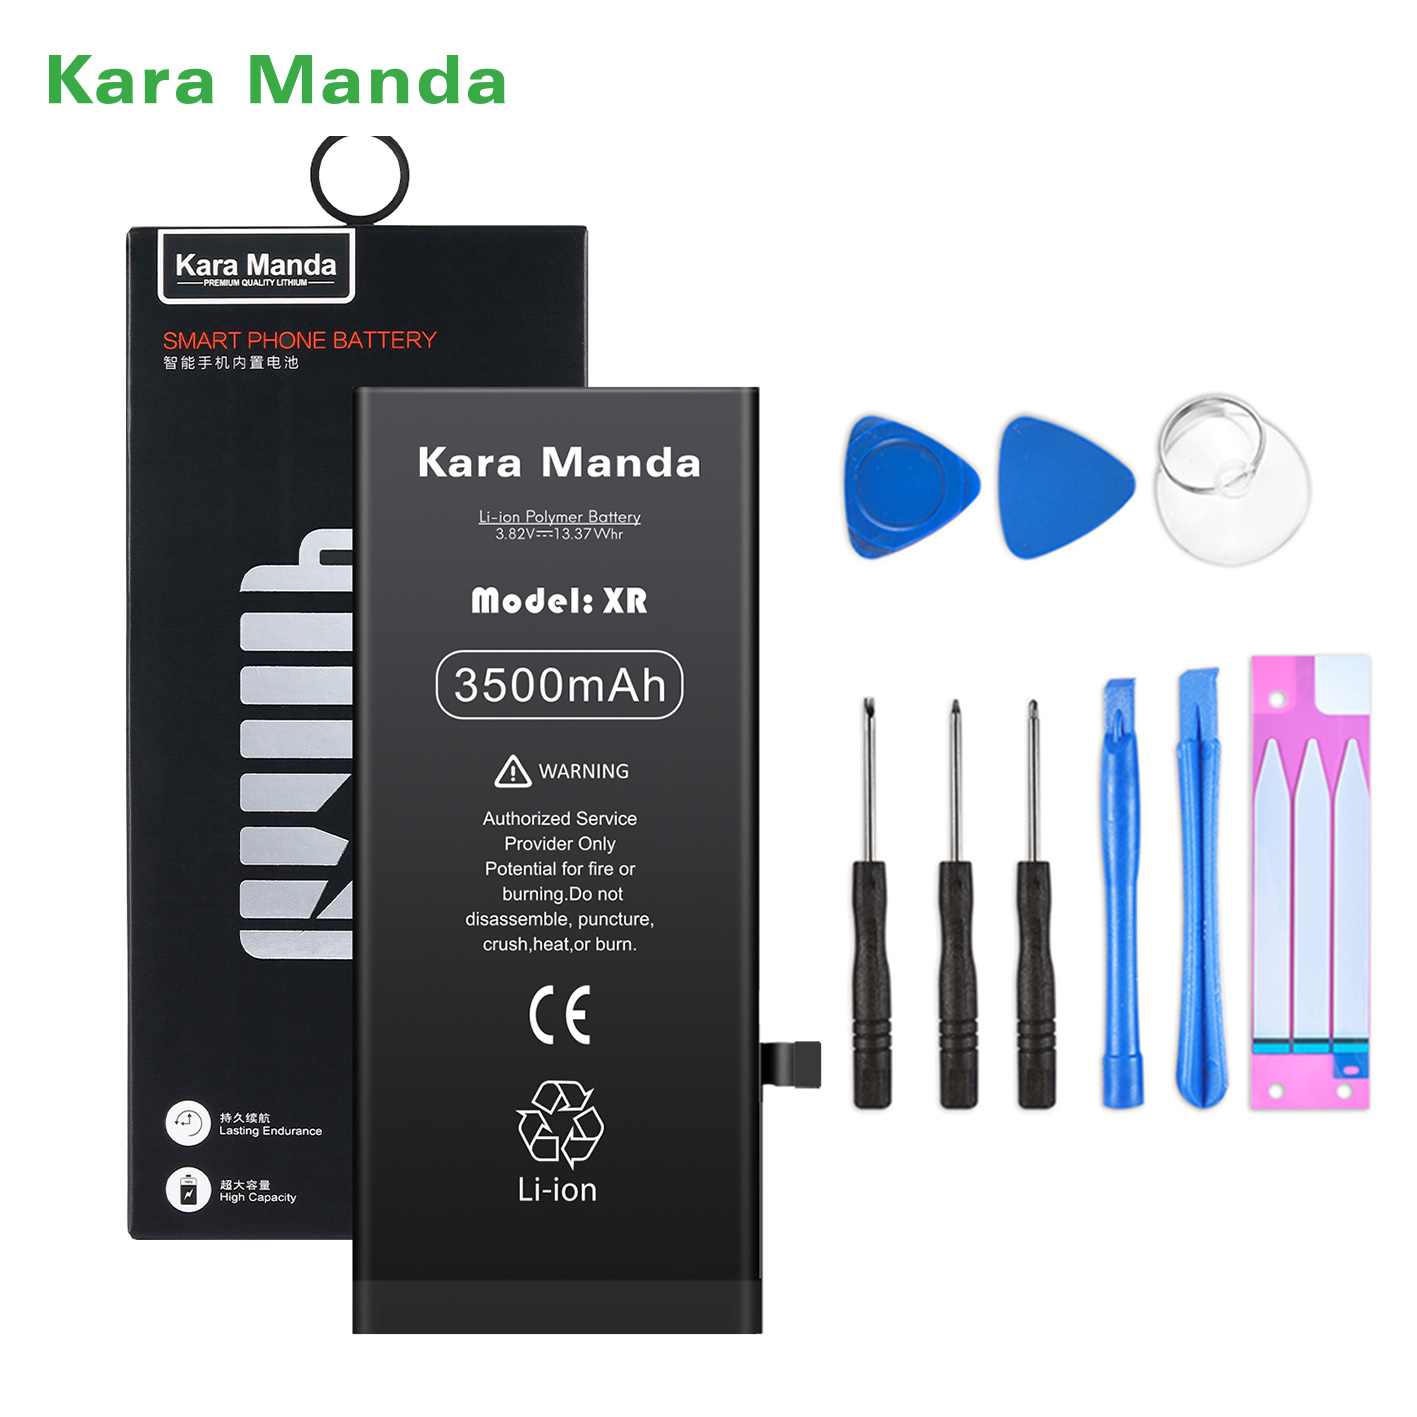 https://www.cnkaramanda.com/iphone-xr-replacement-battery-high-capacity-3500mah-wholesale-oemkara-manda-product/